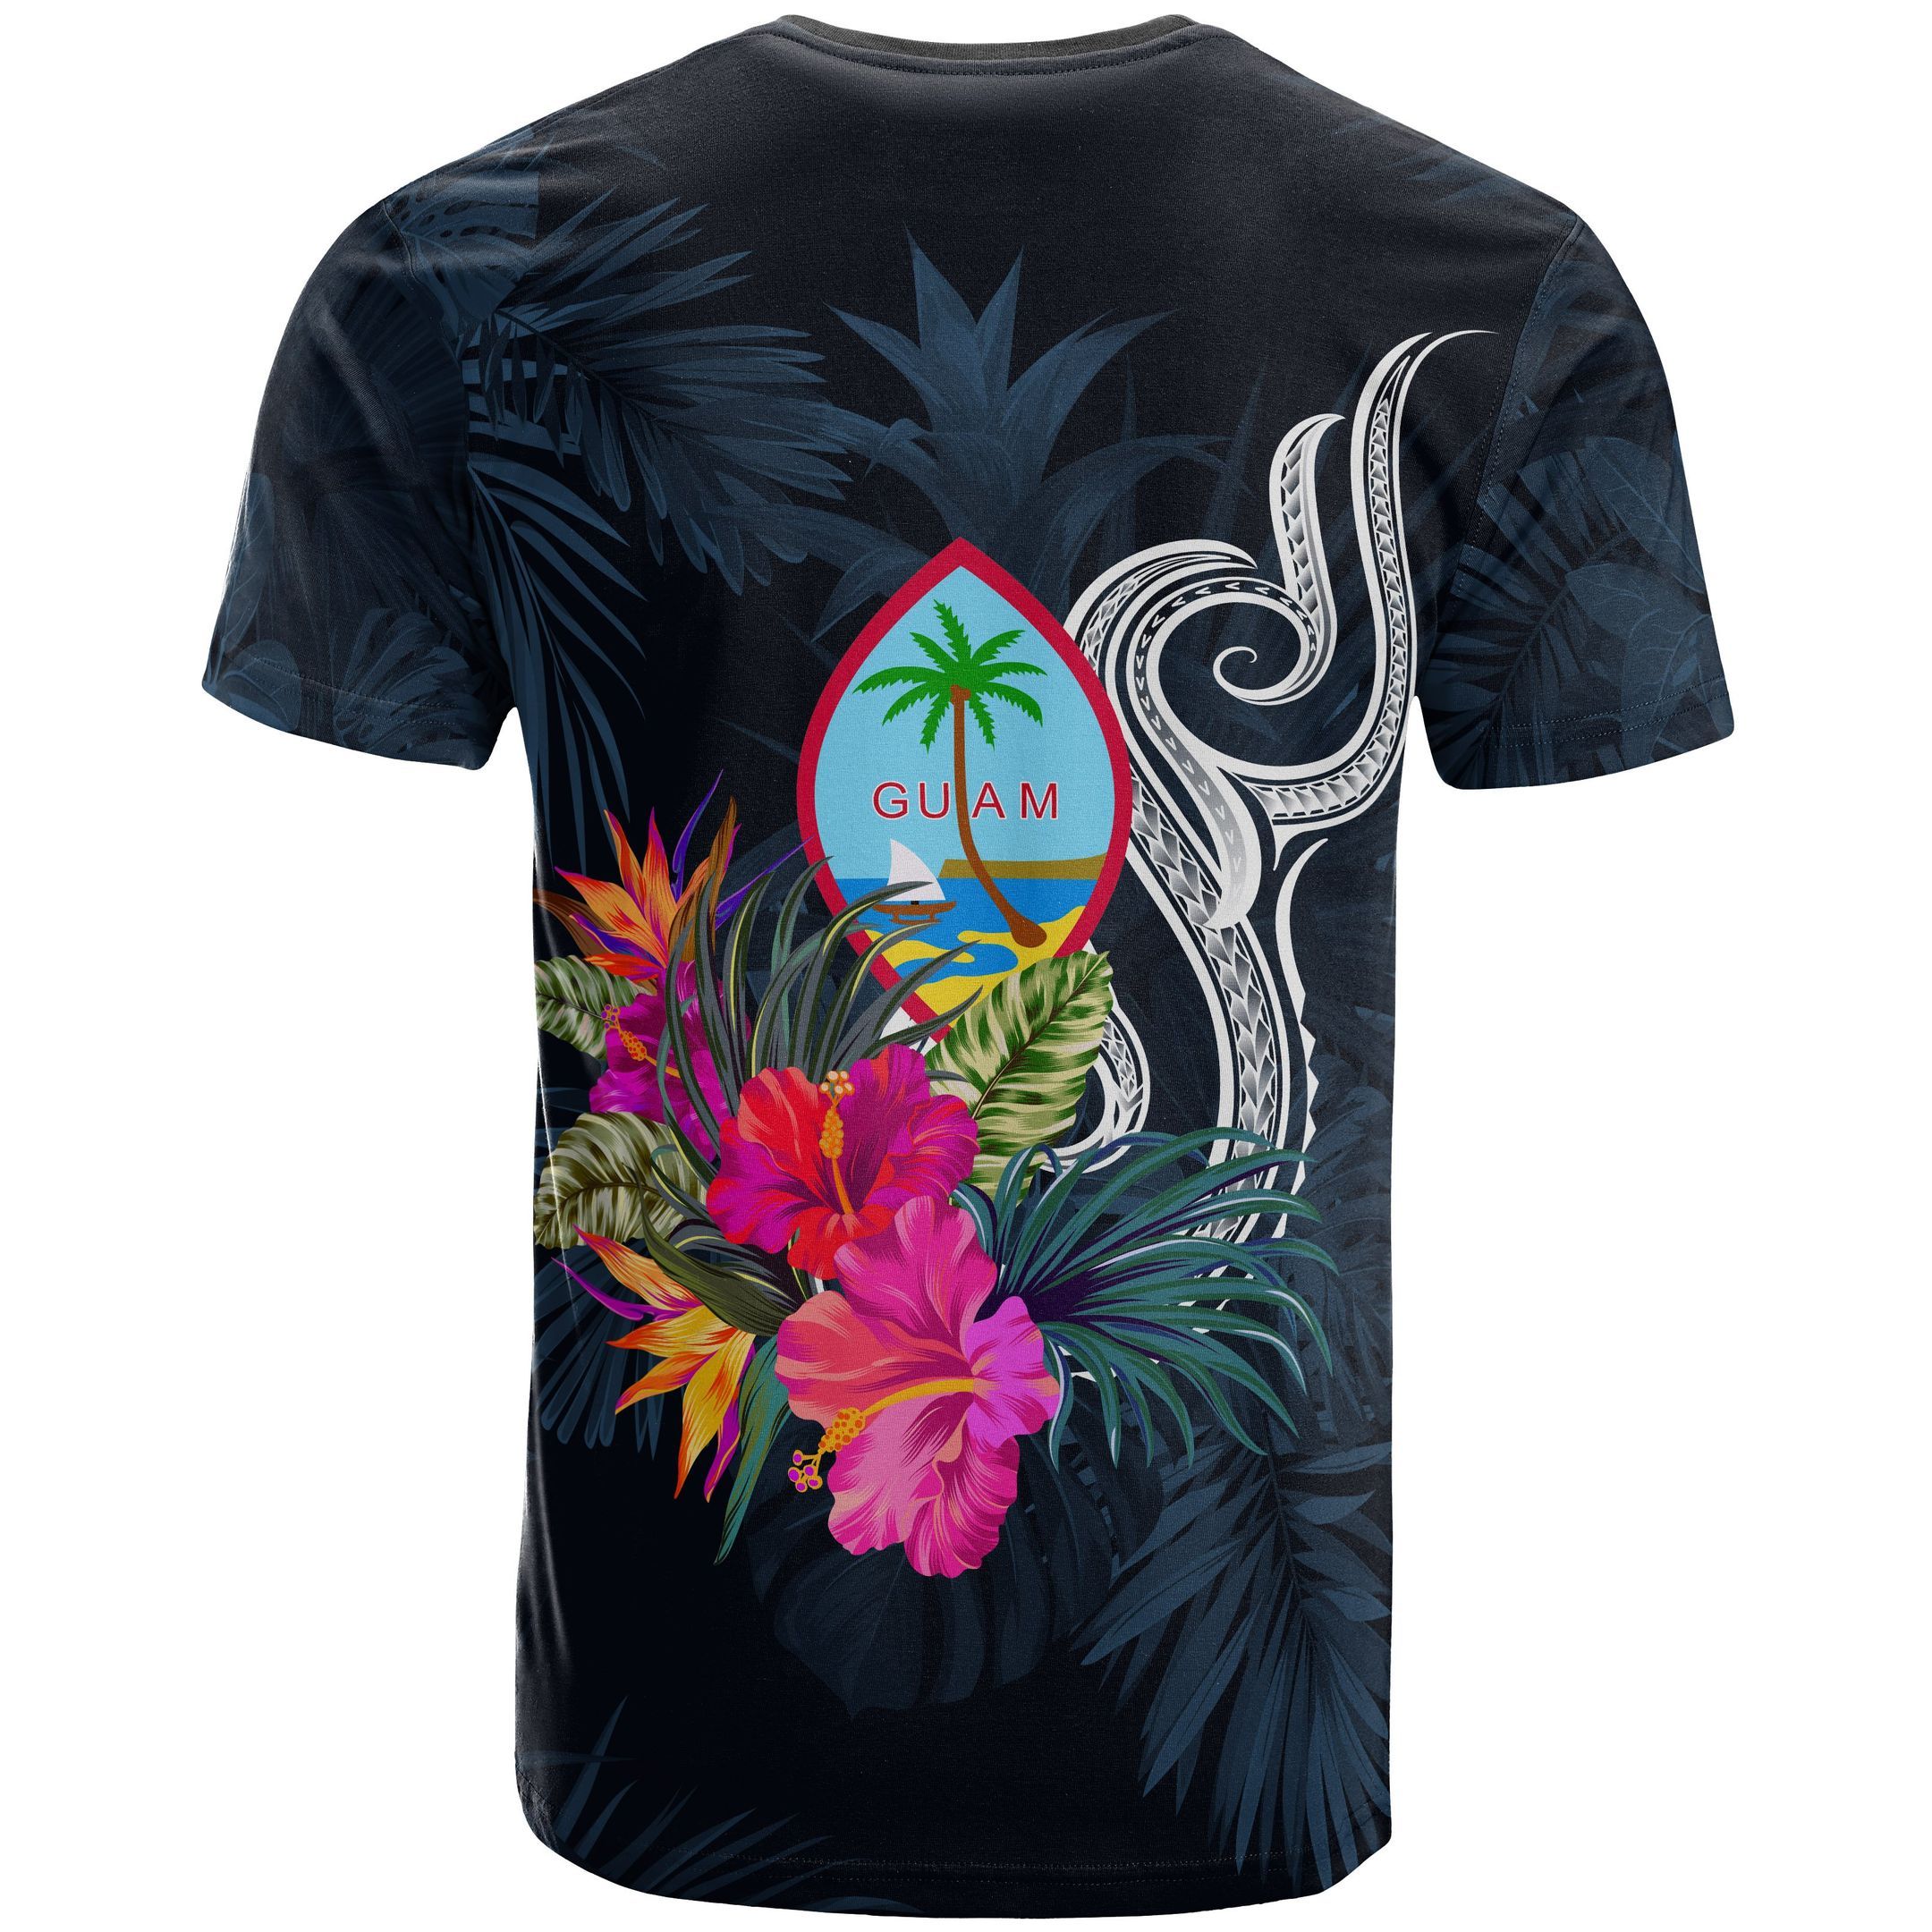 Guam Polynesian T-shirt - Tropical Flower - BN12